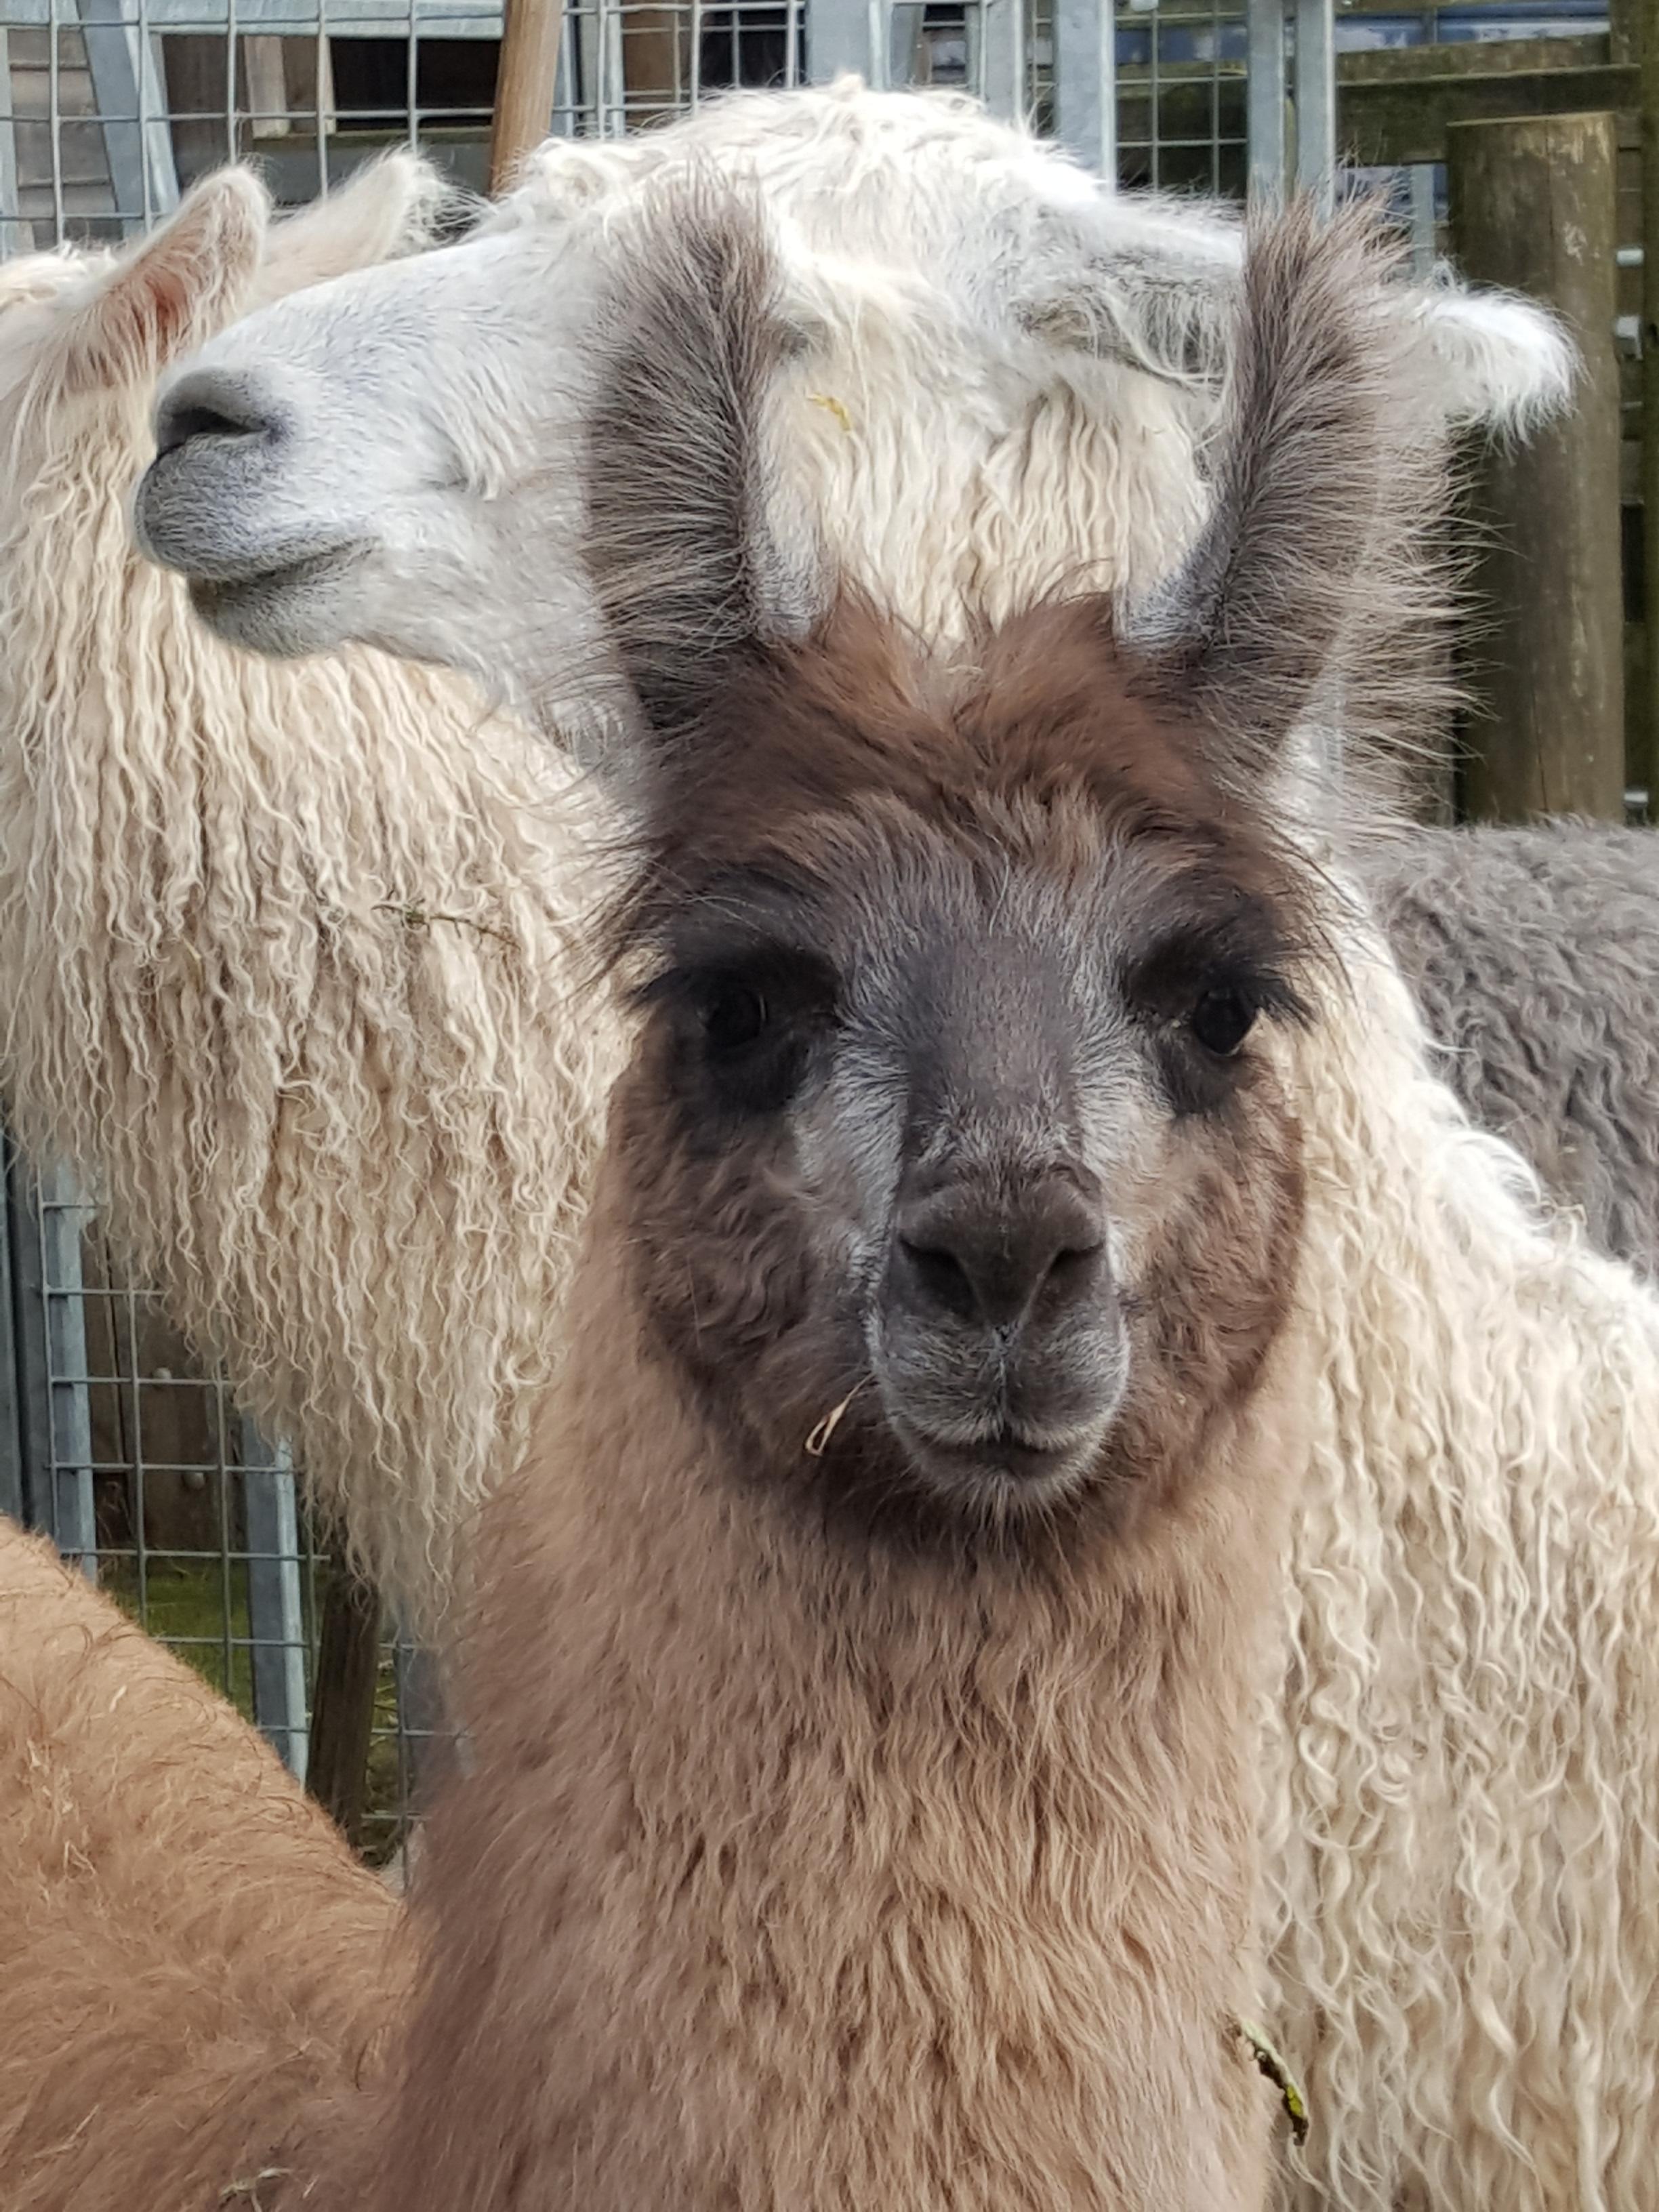 Delphine | Watertown Llamas | Llamas for sale - Llama breeder